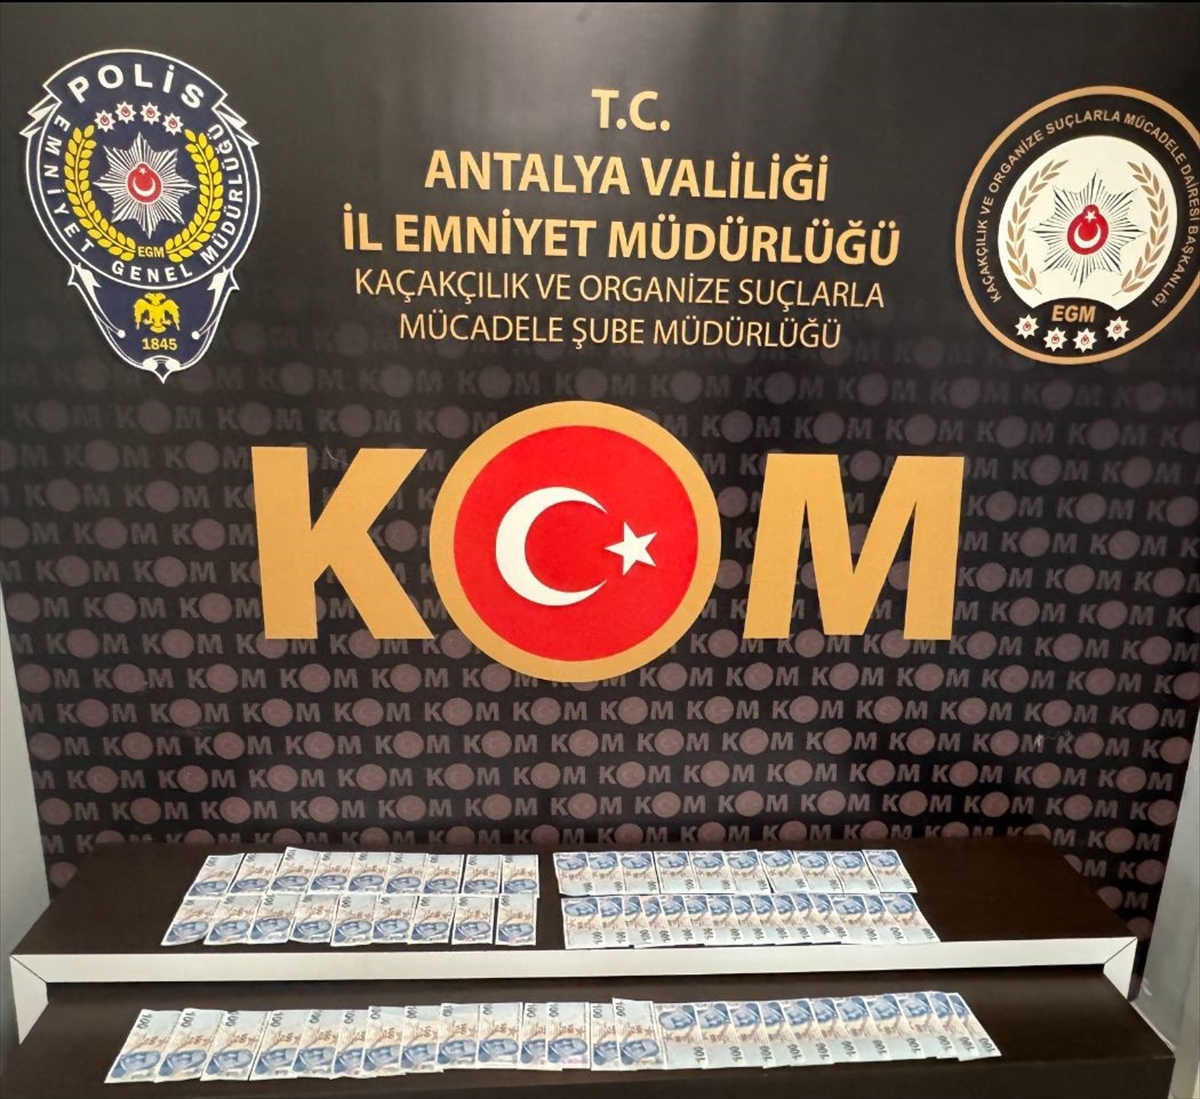 Antalya'da “parada sahtecilik” suçundan kesinleşmiş hapis cezası bulunan hükümlü yakalandı